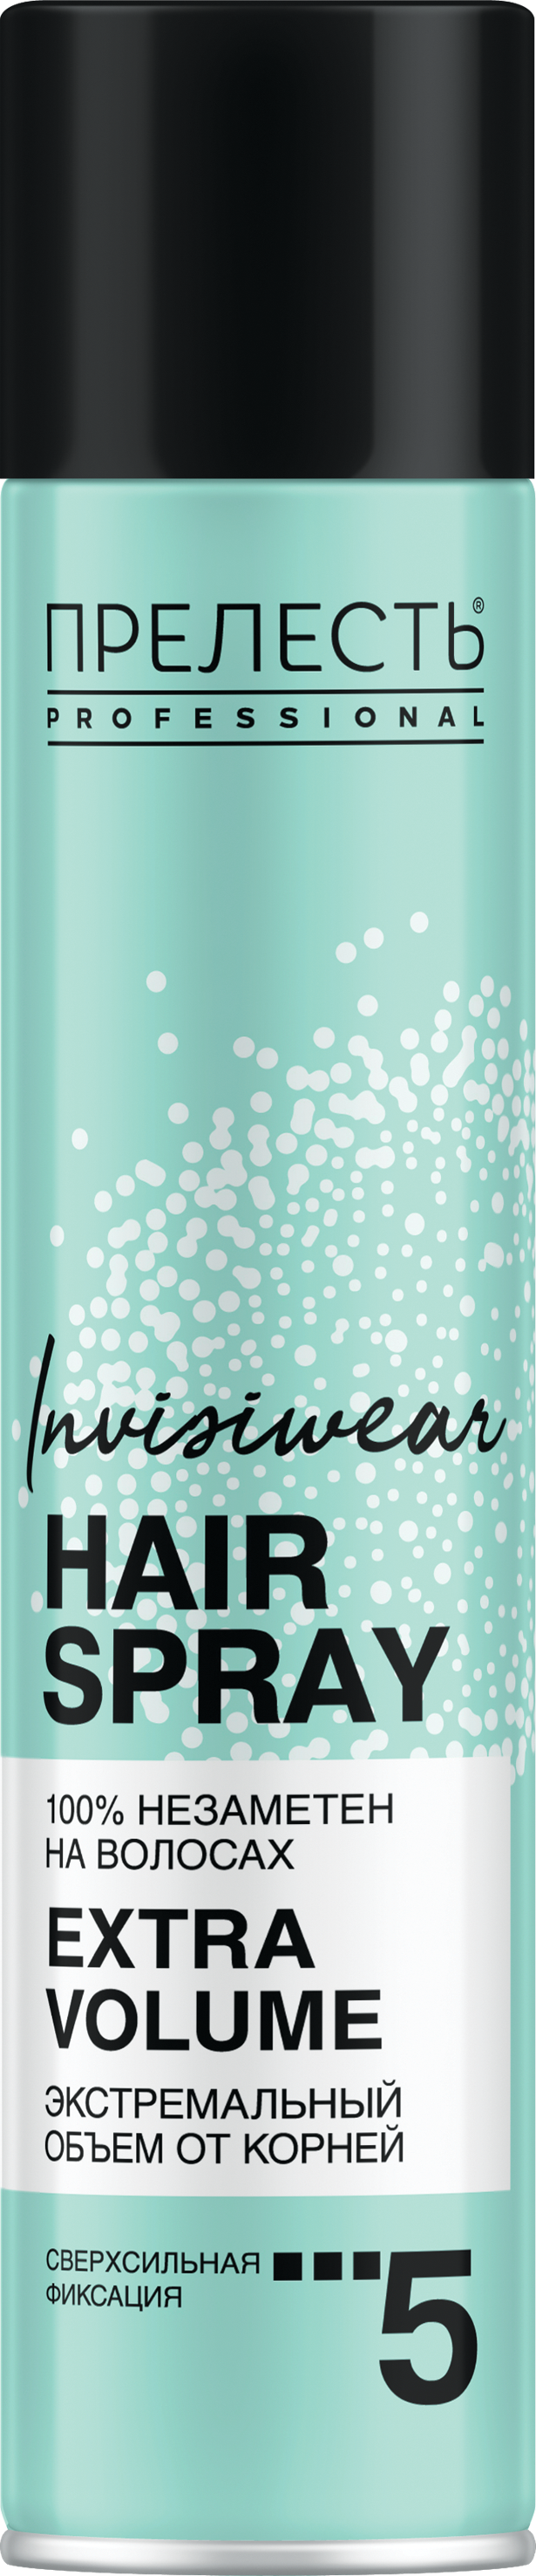 Лак для волос Прелесть Invisiwear Невесомый, экстремальный объем, 300 мл прелесть professional невесомый мусс для волос invisiwear экстремальный объем 200